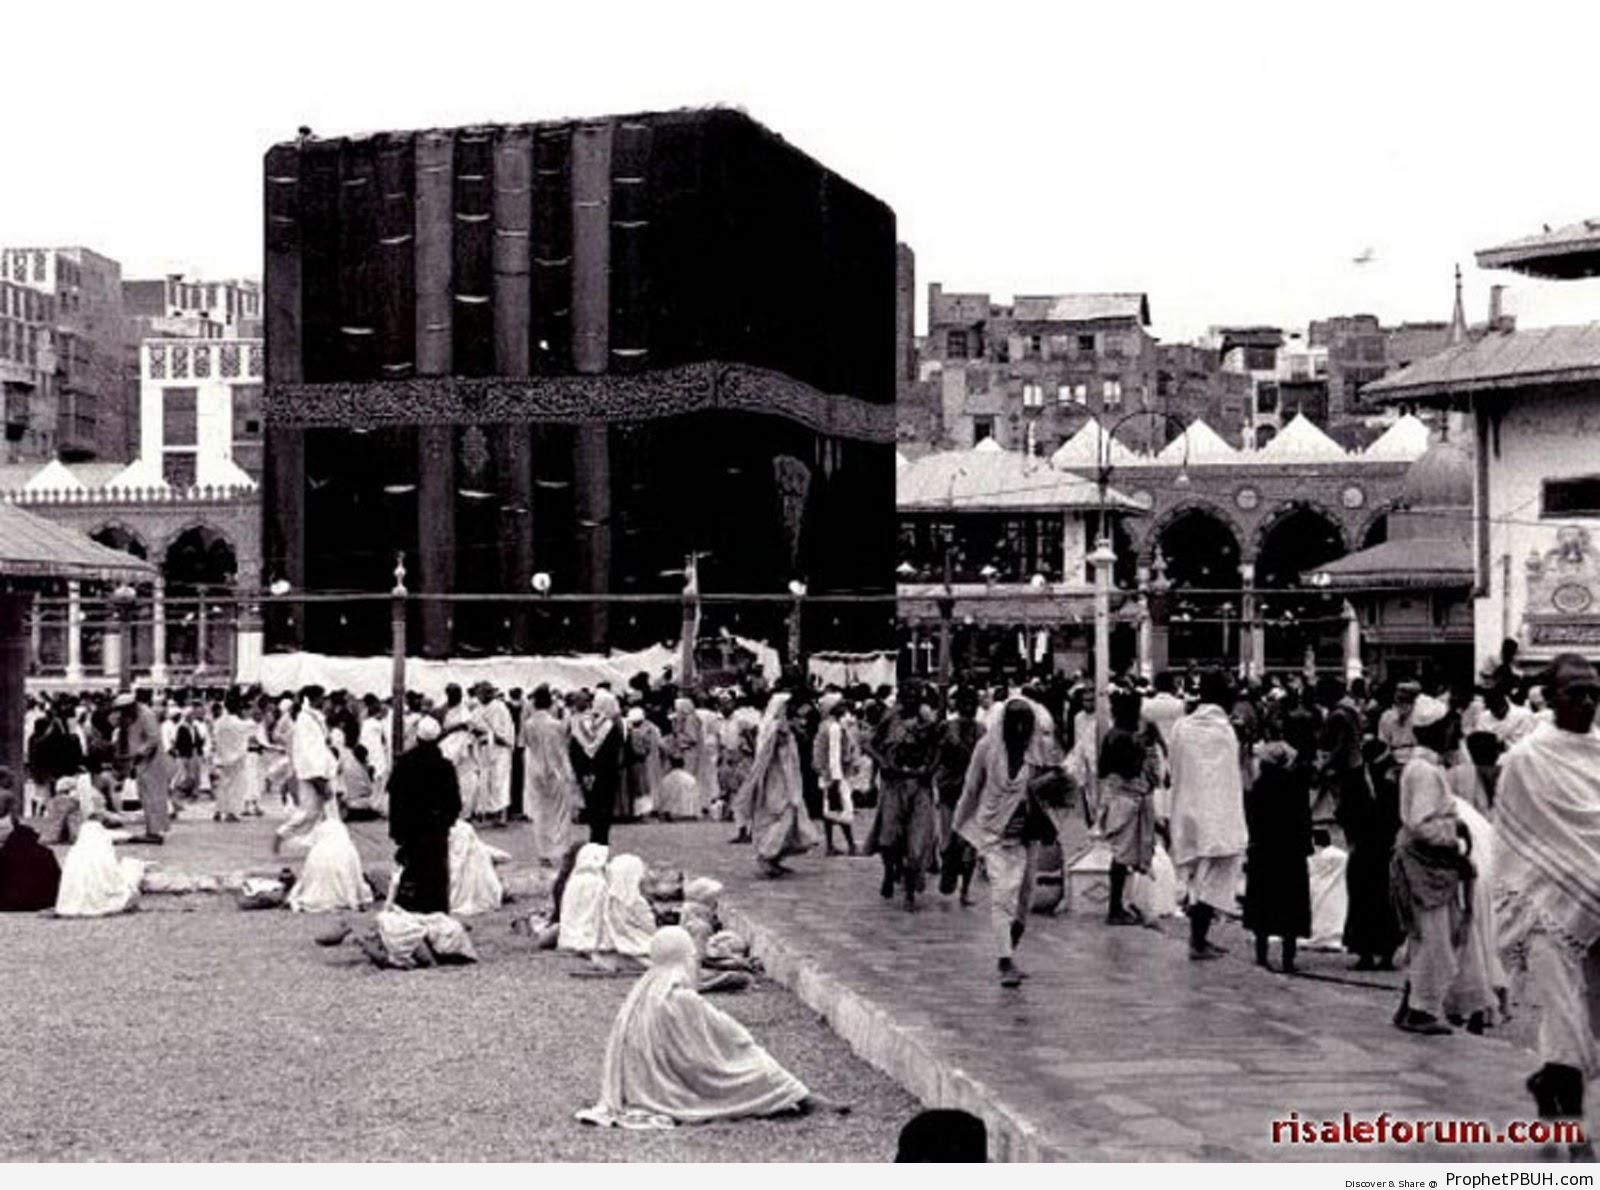 Old Photo of the Kaba in 1937 - al-Masjid al-Haram in Makkah, Saudi Arabia -Picture